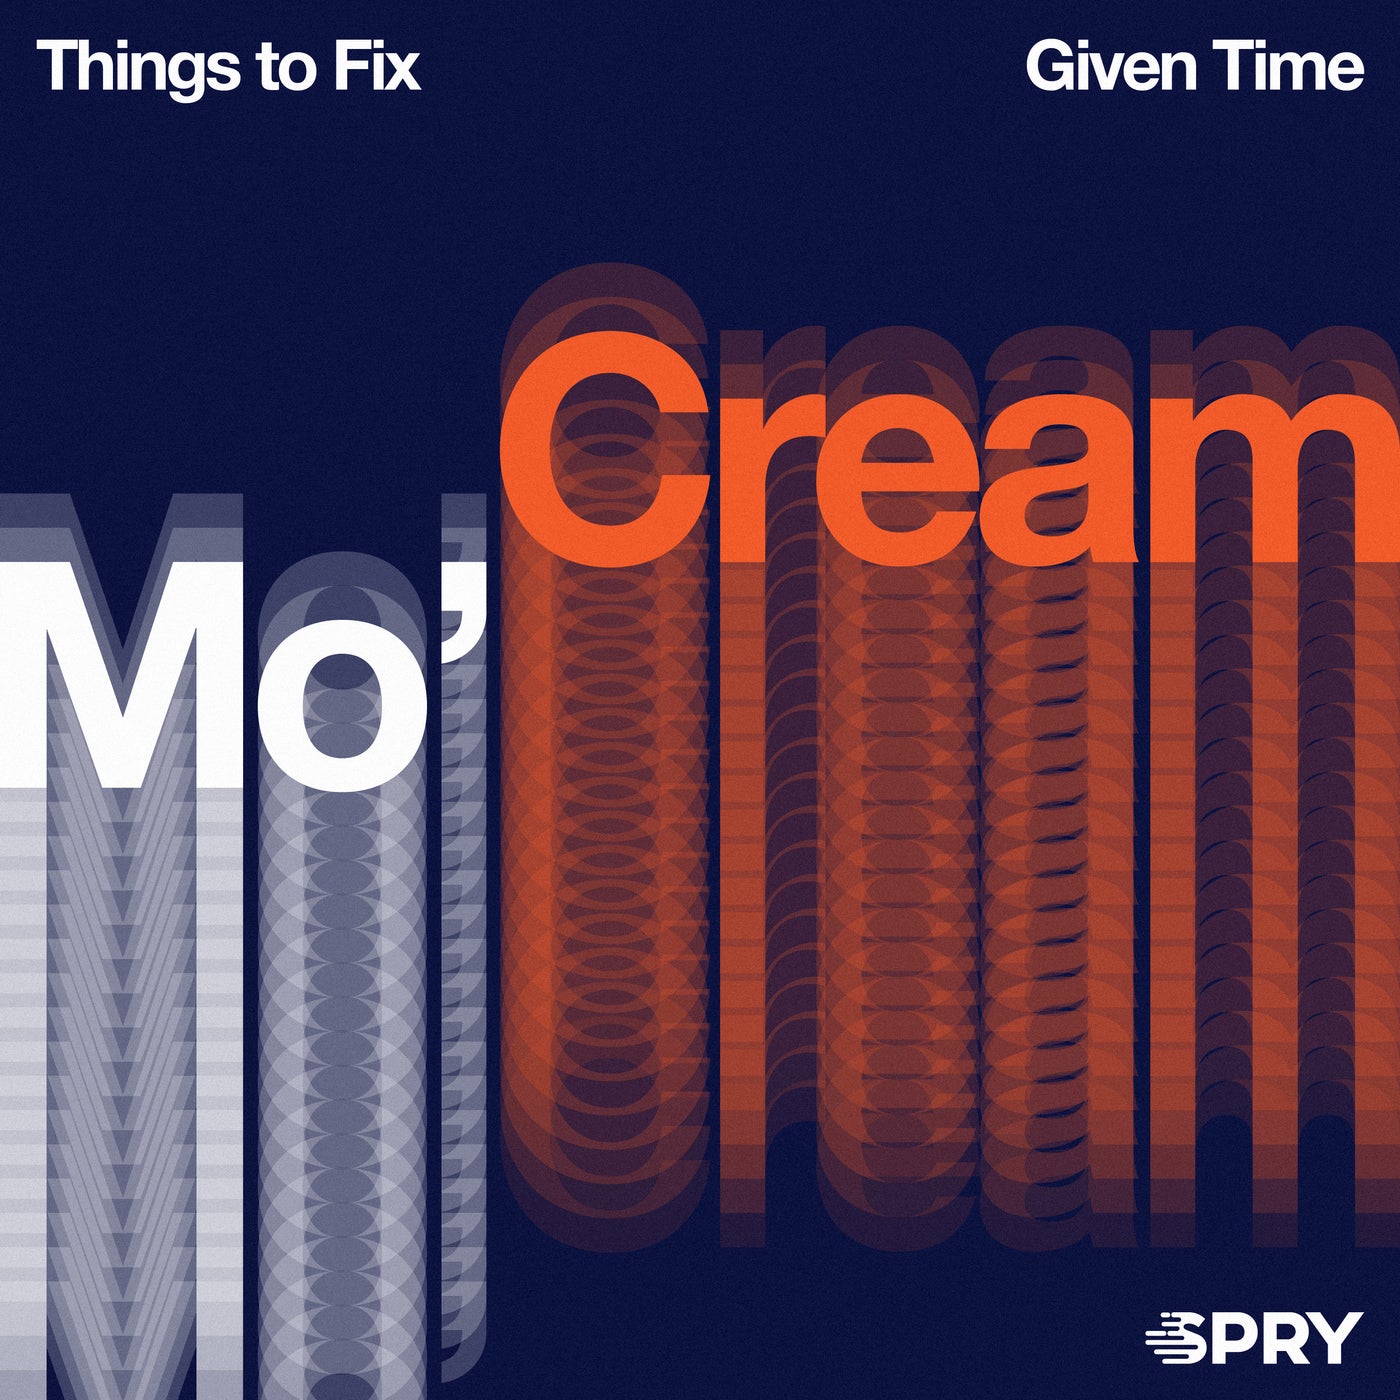 Fix main. Mo'Cream. Creamer things. Me time.